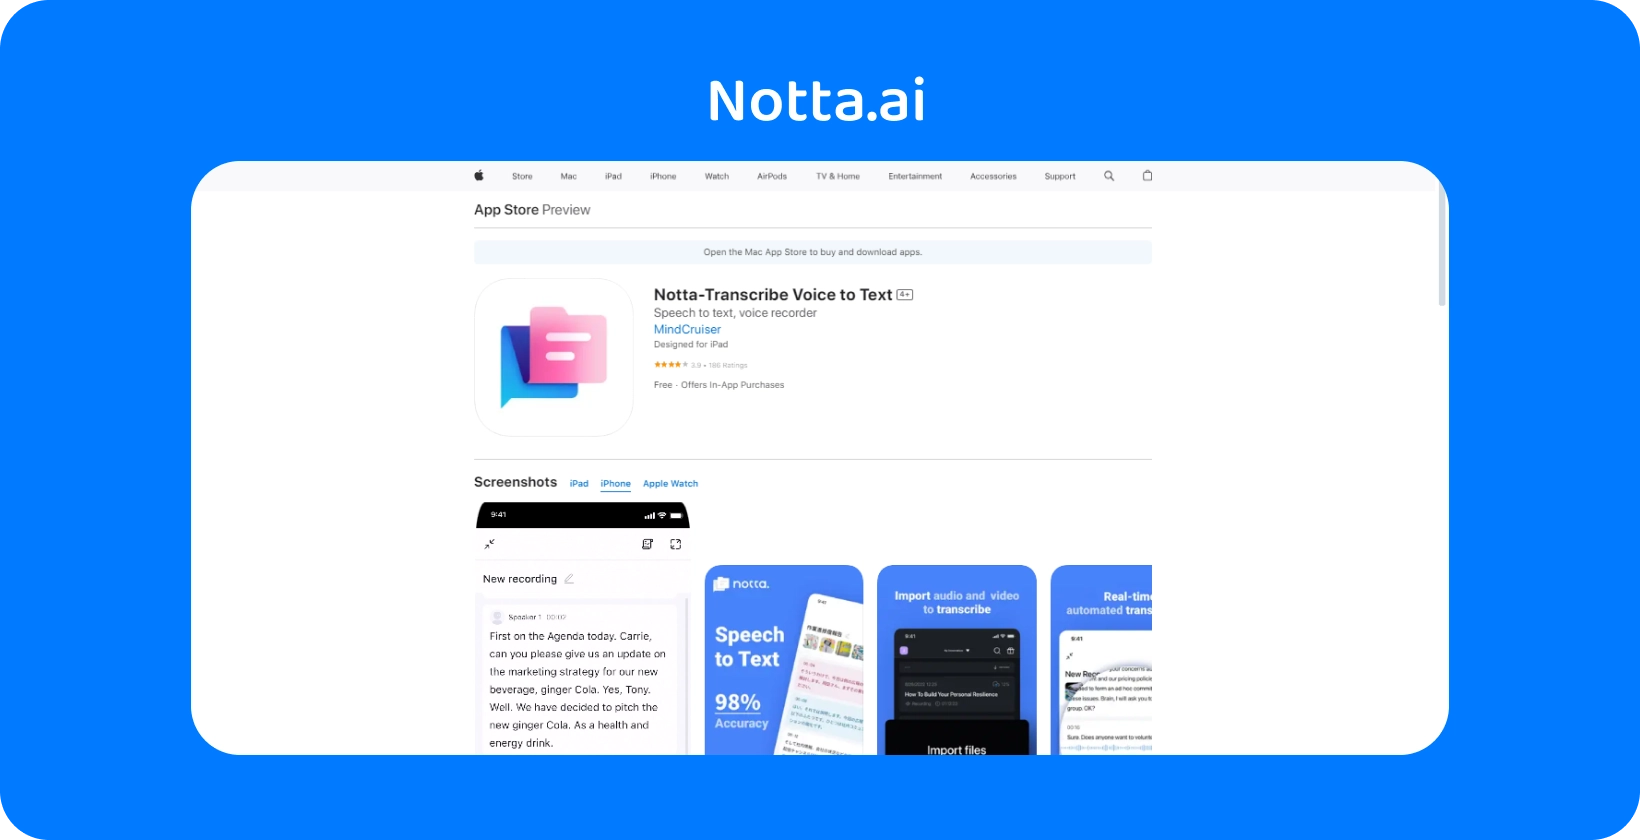 Демонстрация предварительного просмотра Nota.ai в App Store с новыми функциями преобразования голоса в текст с точностью AI.